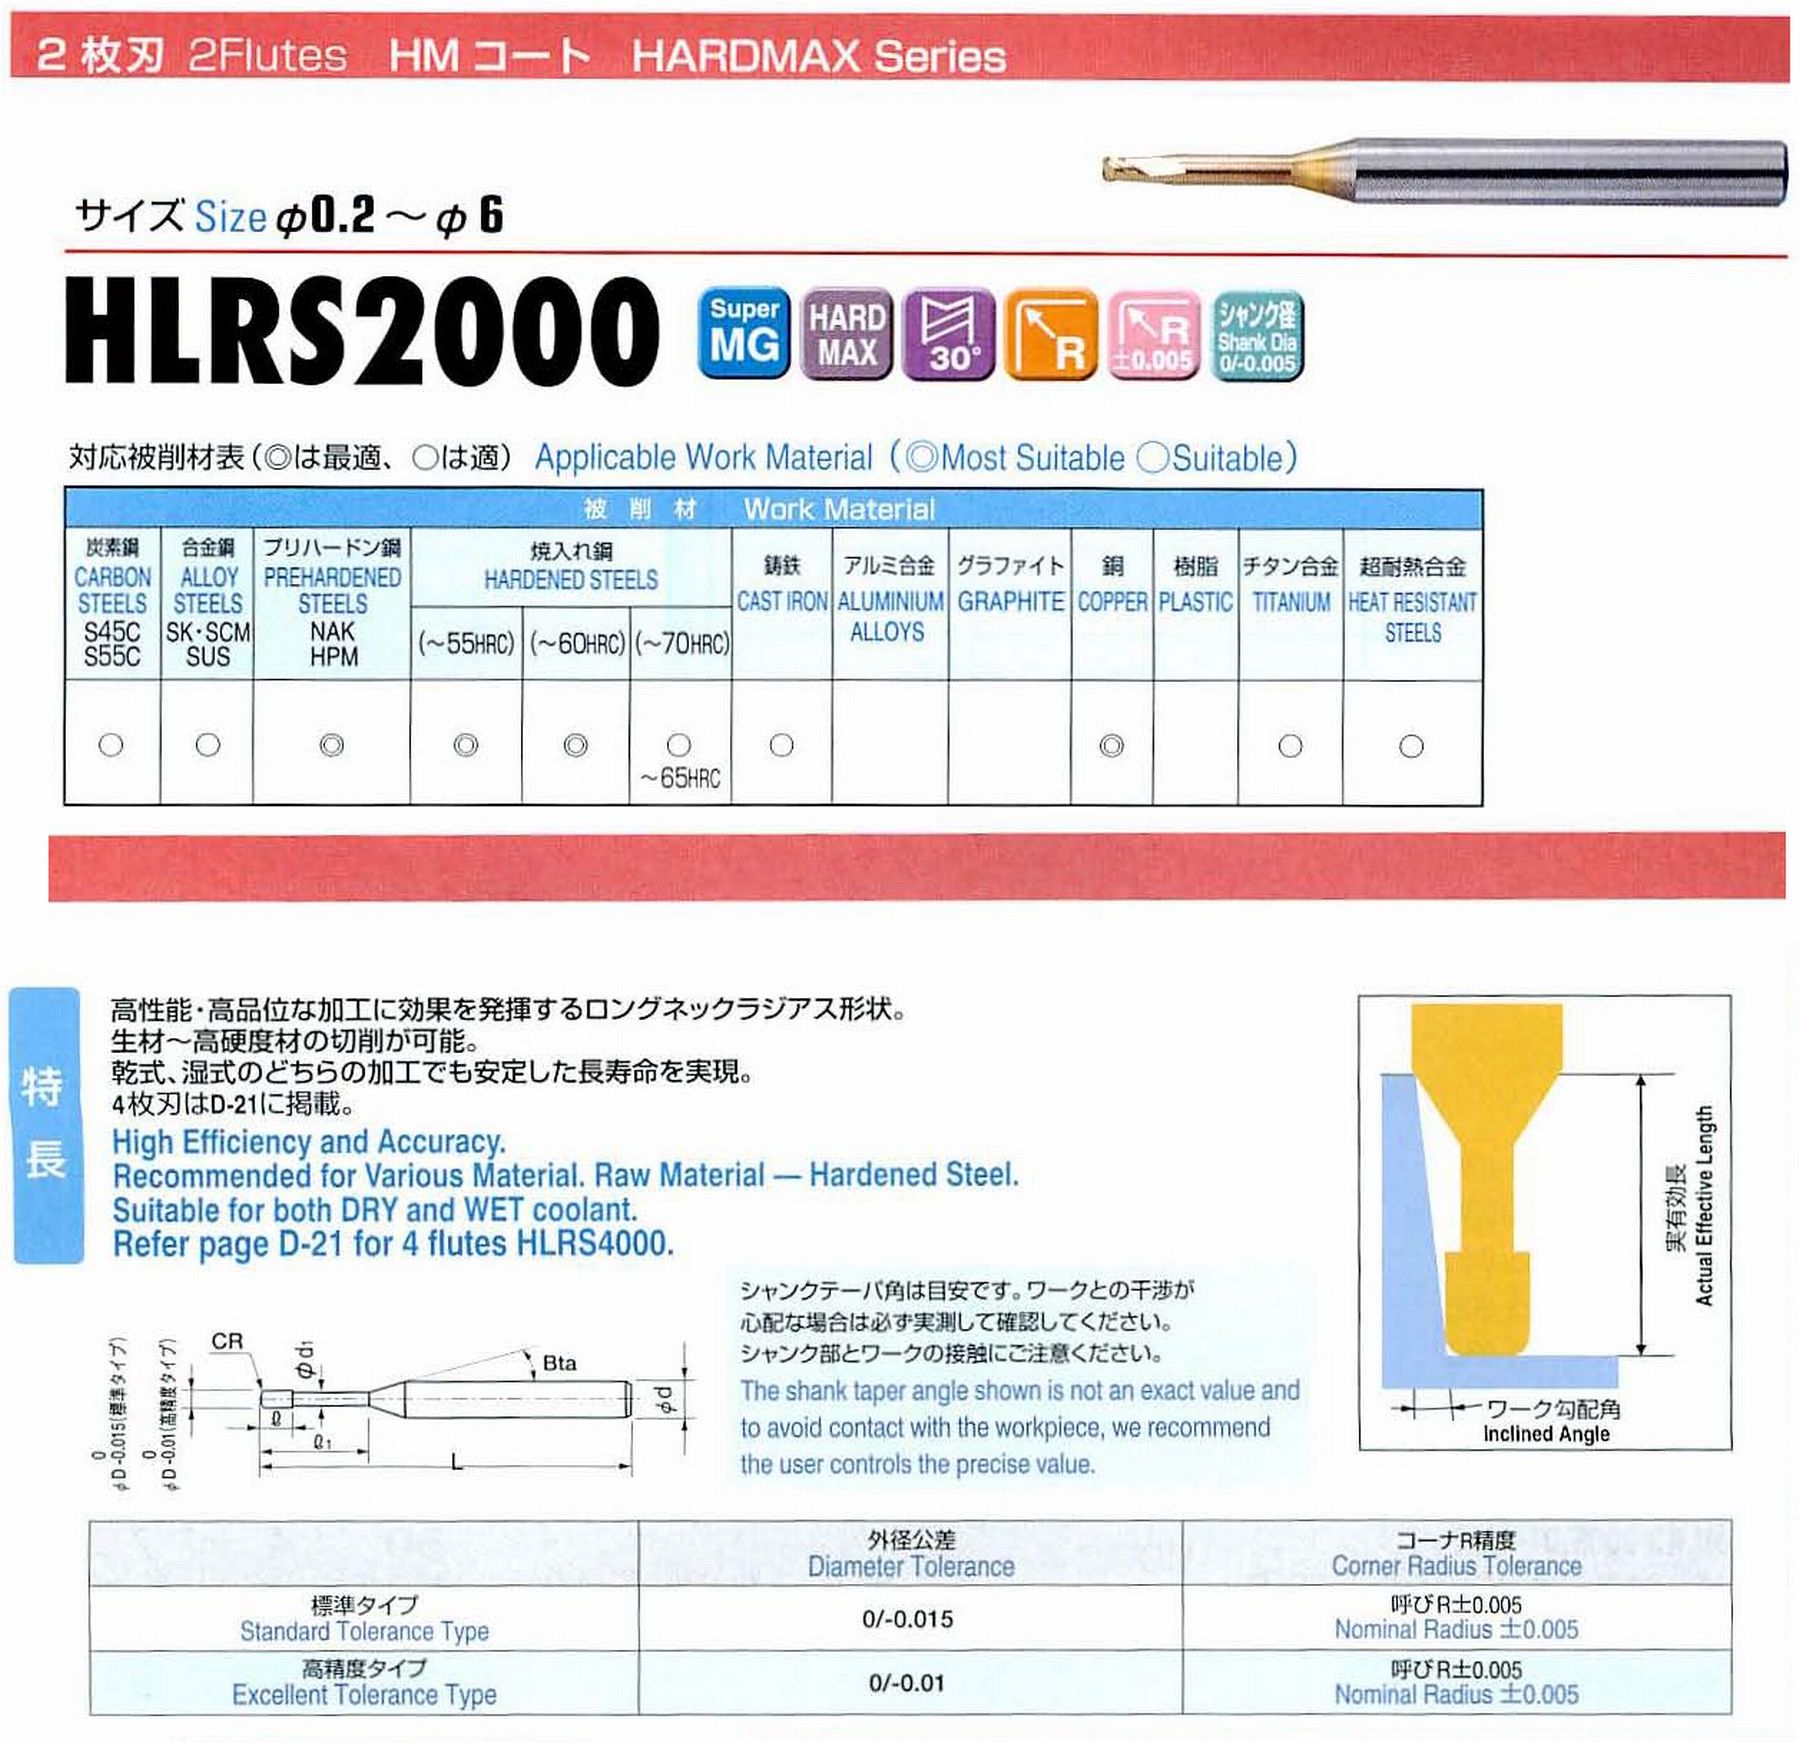 ユニオンツール 2枚刃 HLRS2002-005-005E 外径0.2 コーナ半径R0.05 有効長0.5 刃長0.2 首径0.17 シャンクテーパ角16° 全長50 シャンク径4